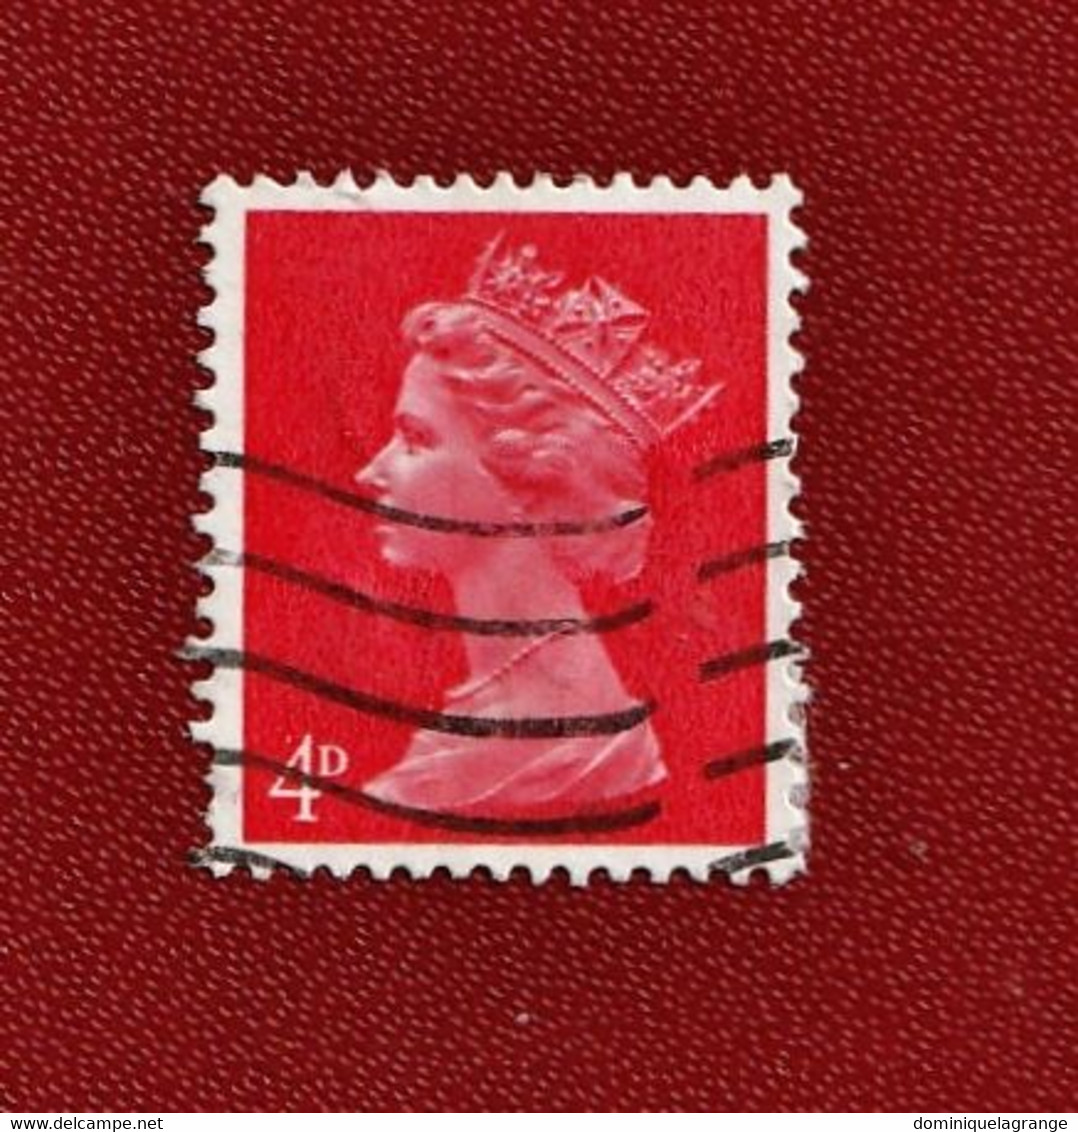 9 timbres de Grande Bretagne de 1959 à 1970